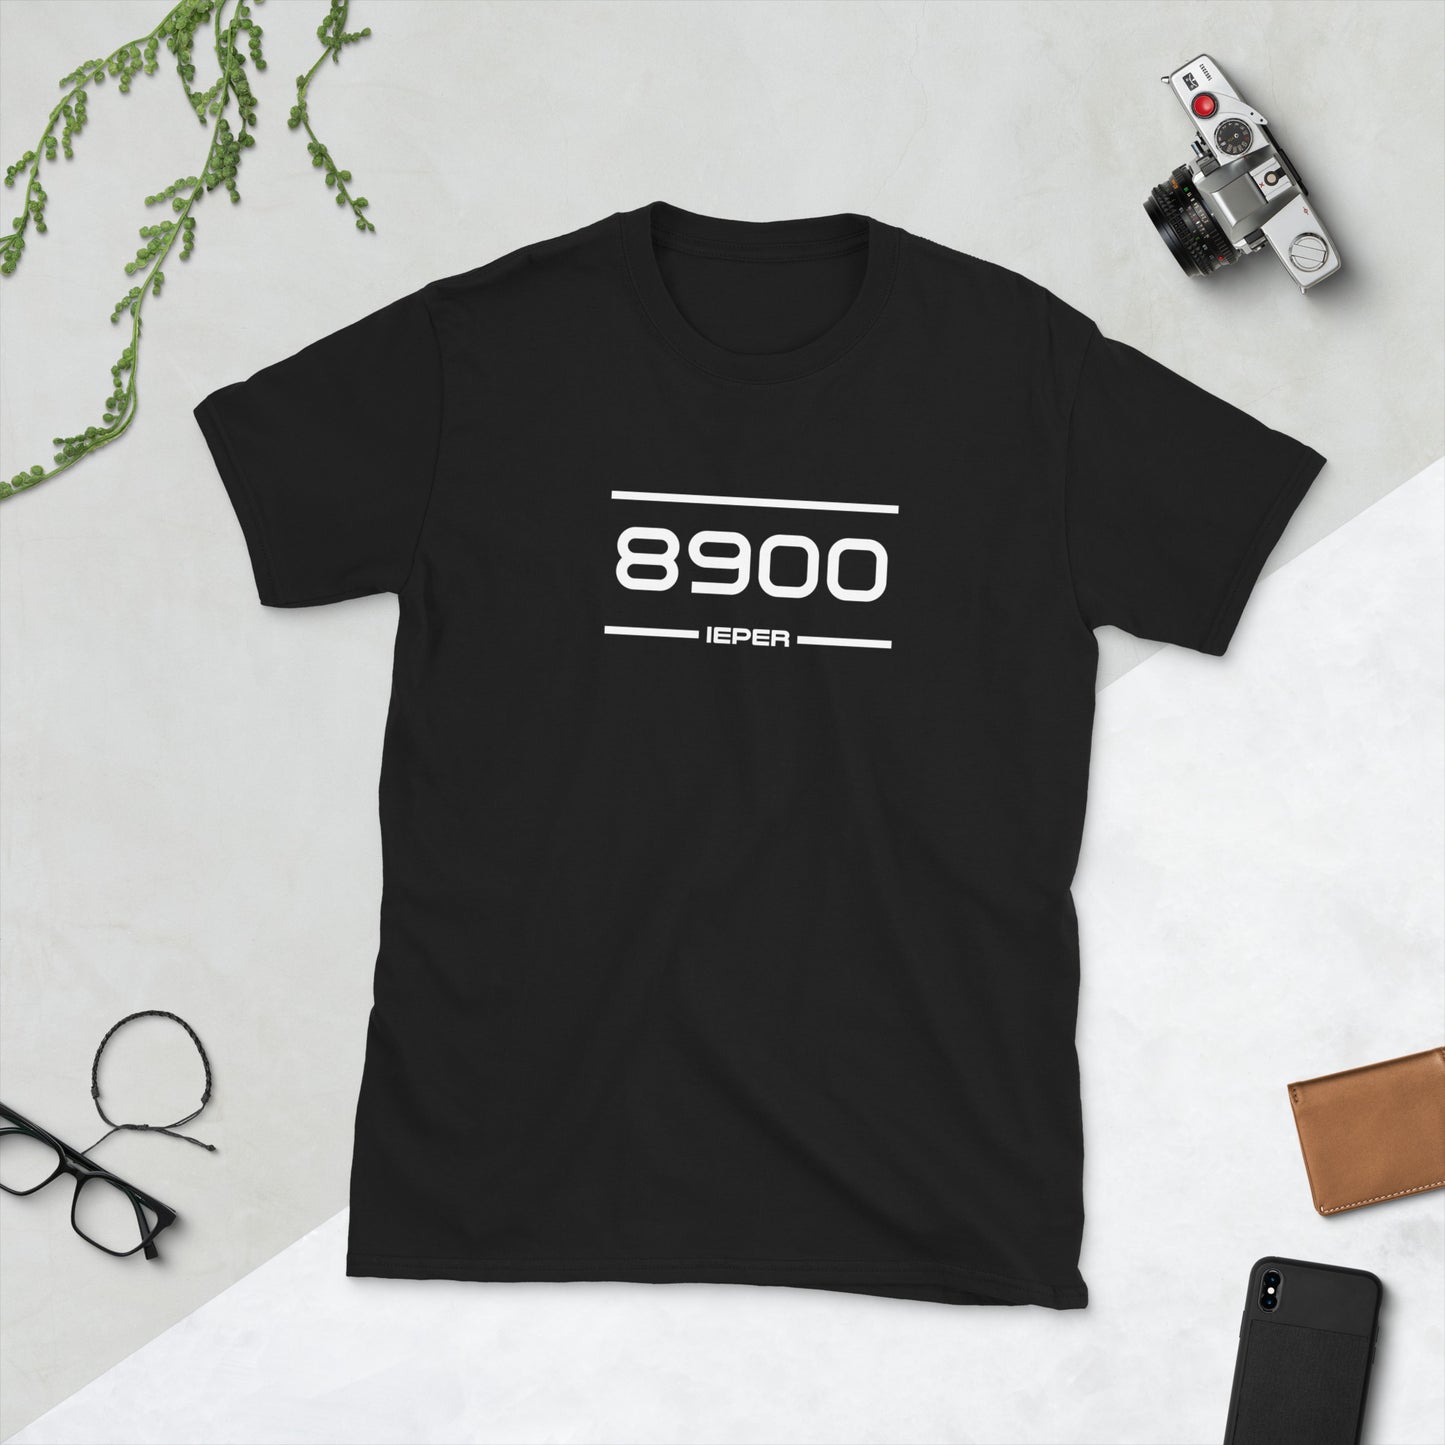 Tshirt - 8900 - Ieper